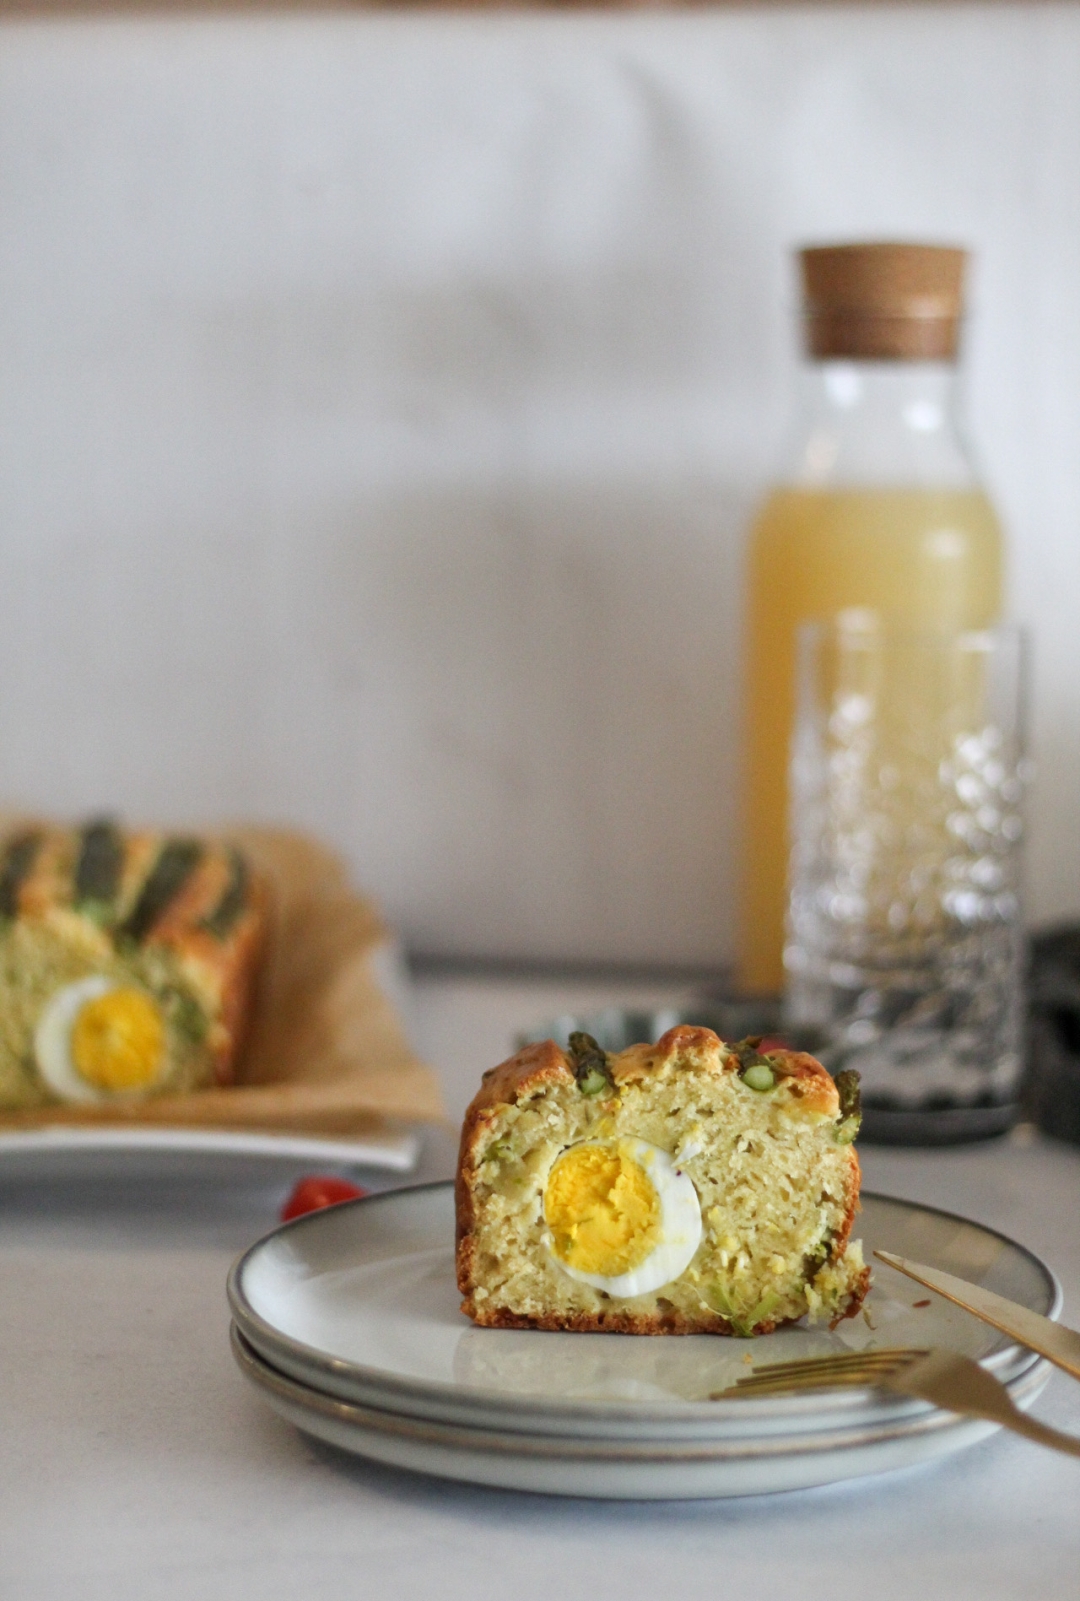 Tonkina kužina: Kruh sa šparogama i jajima idealan za proljetni stol